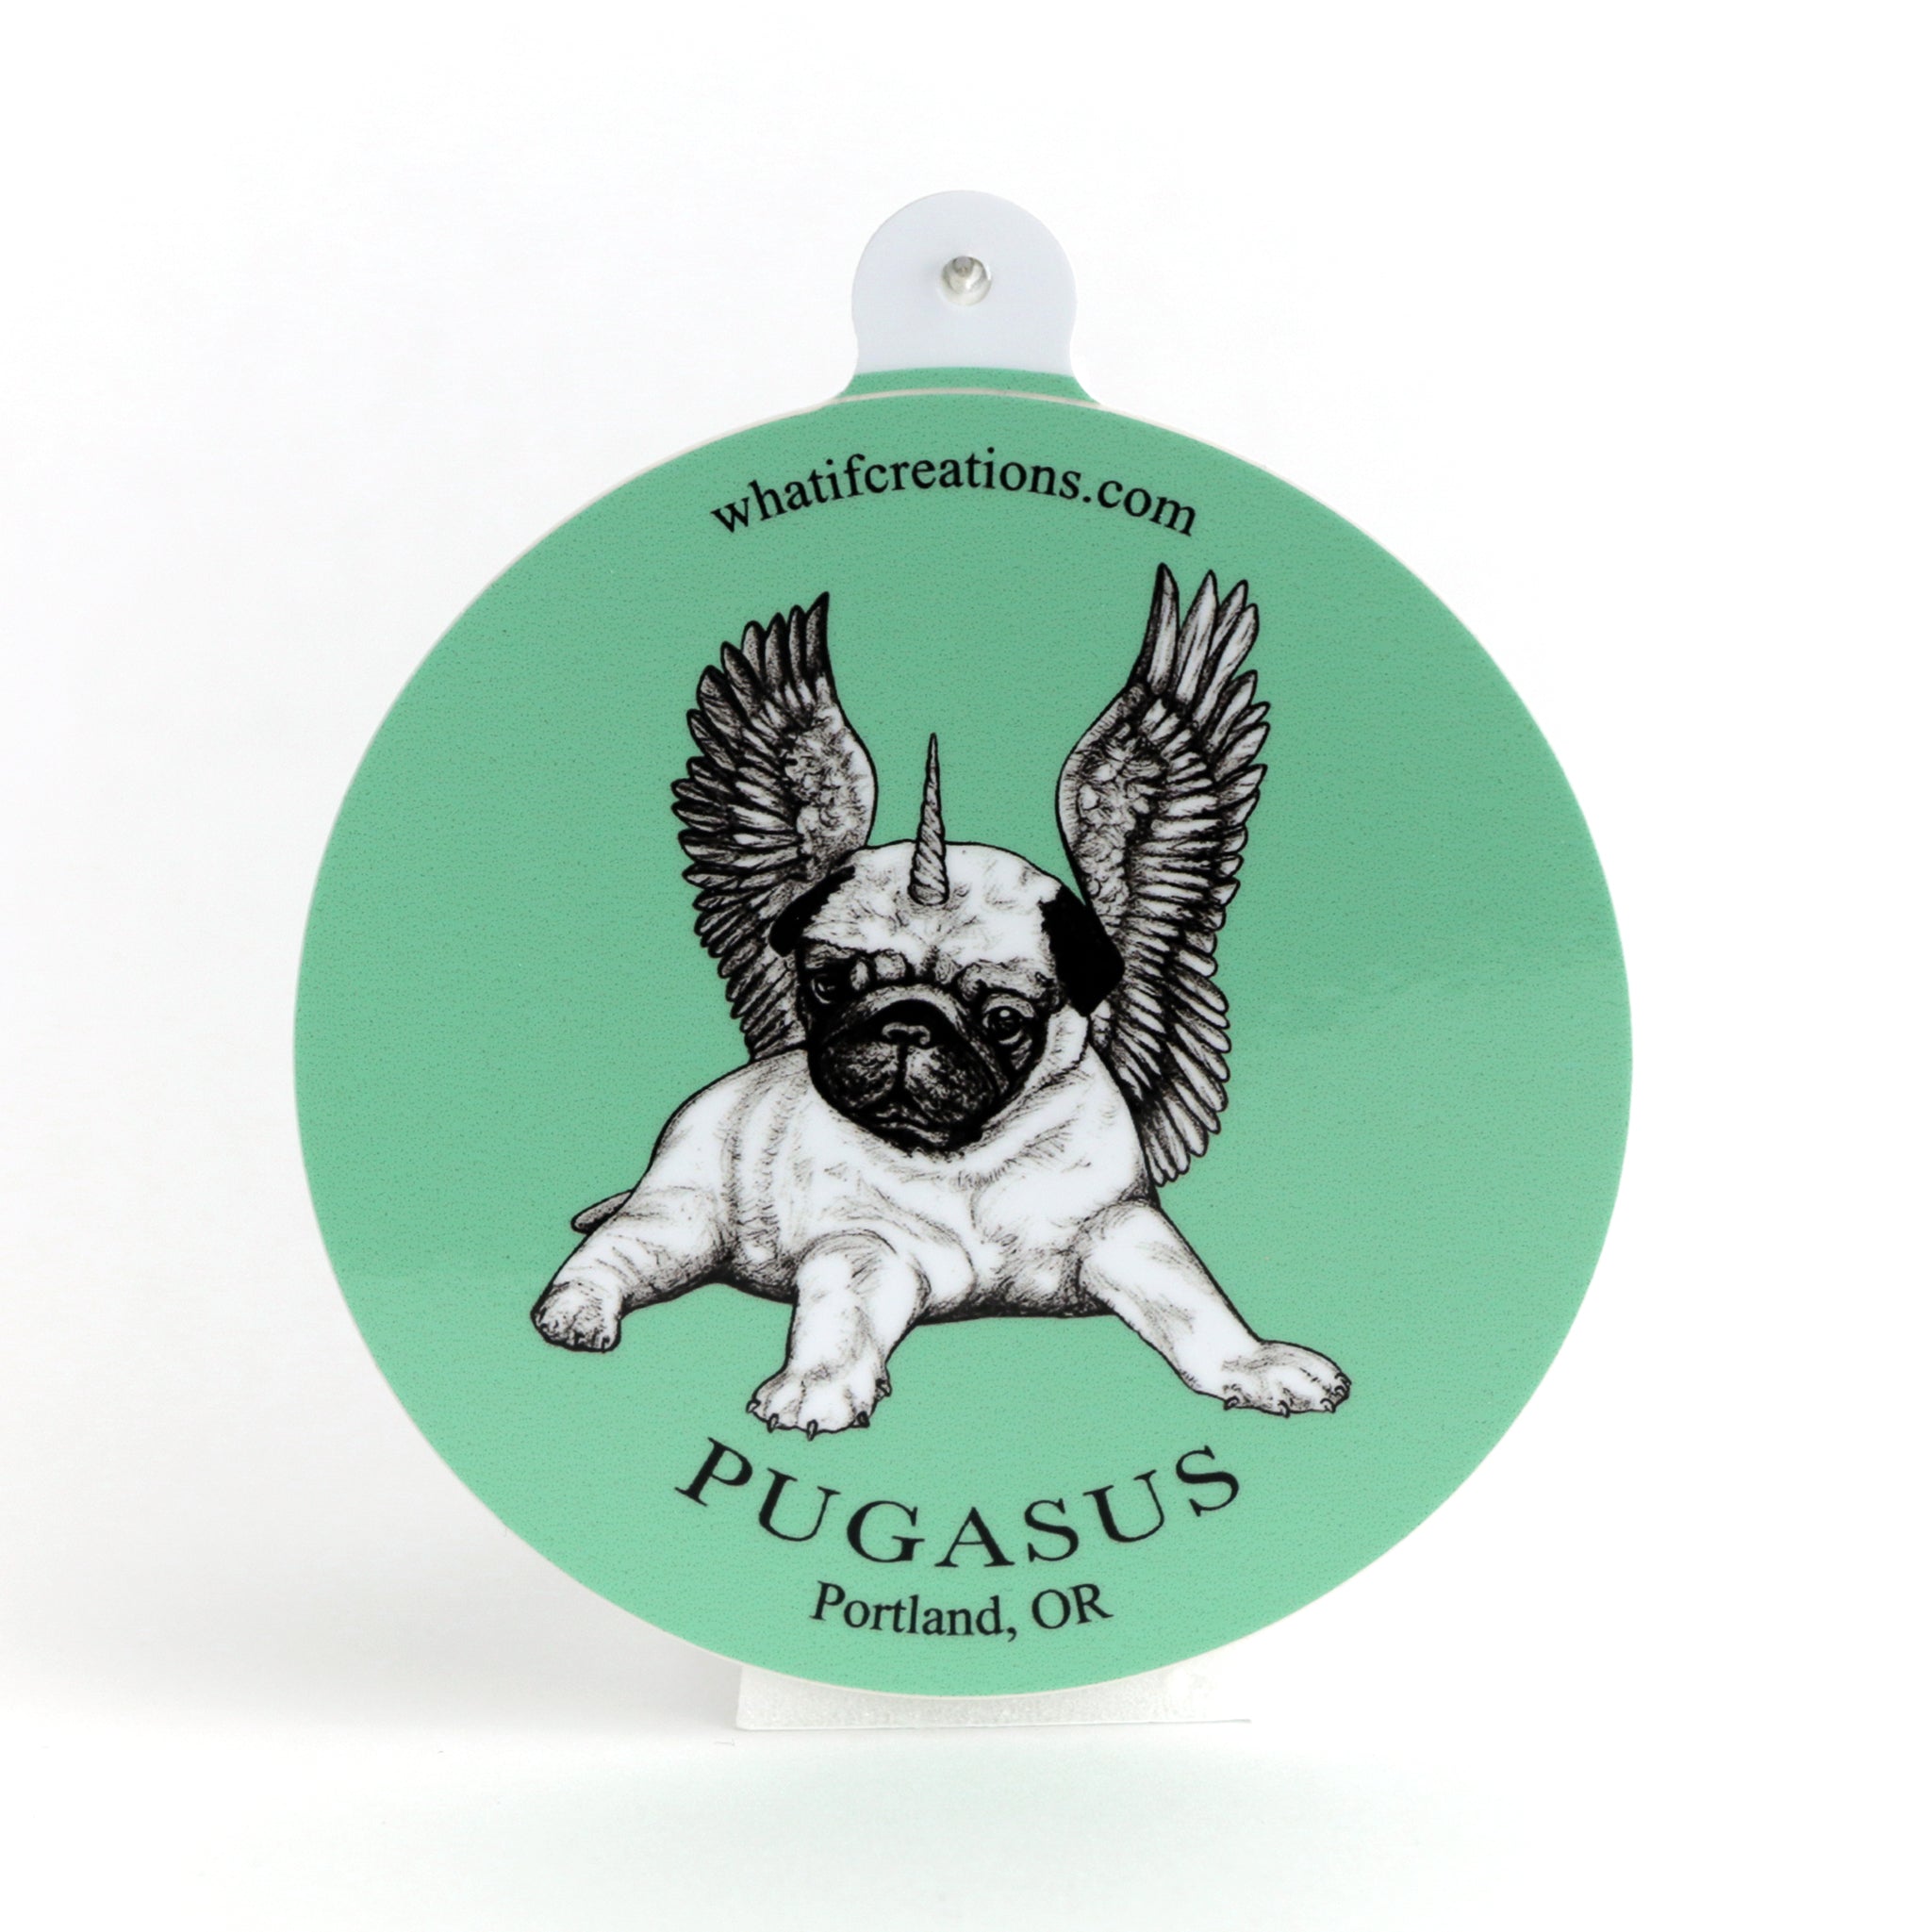 Pugasus | Pug + Pegasus Hybrid Animal | 3" Vinyl Sticker